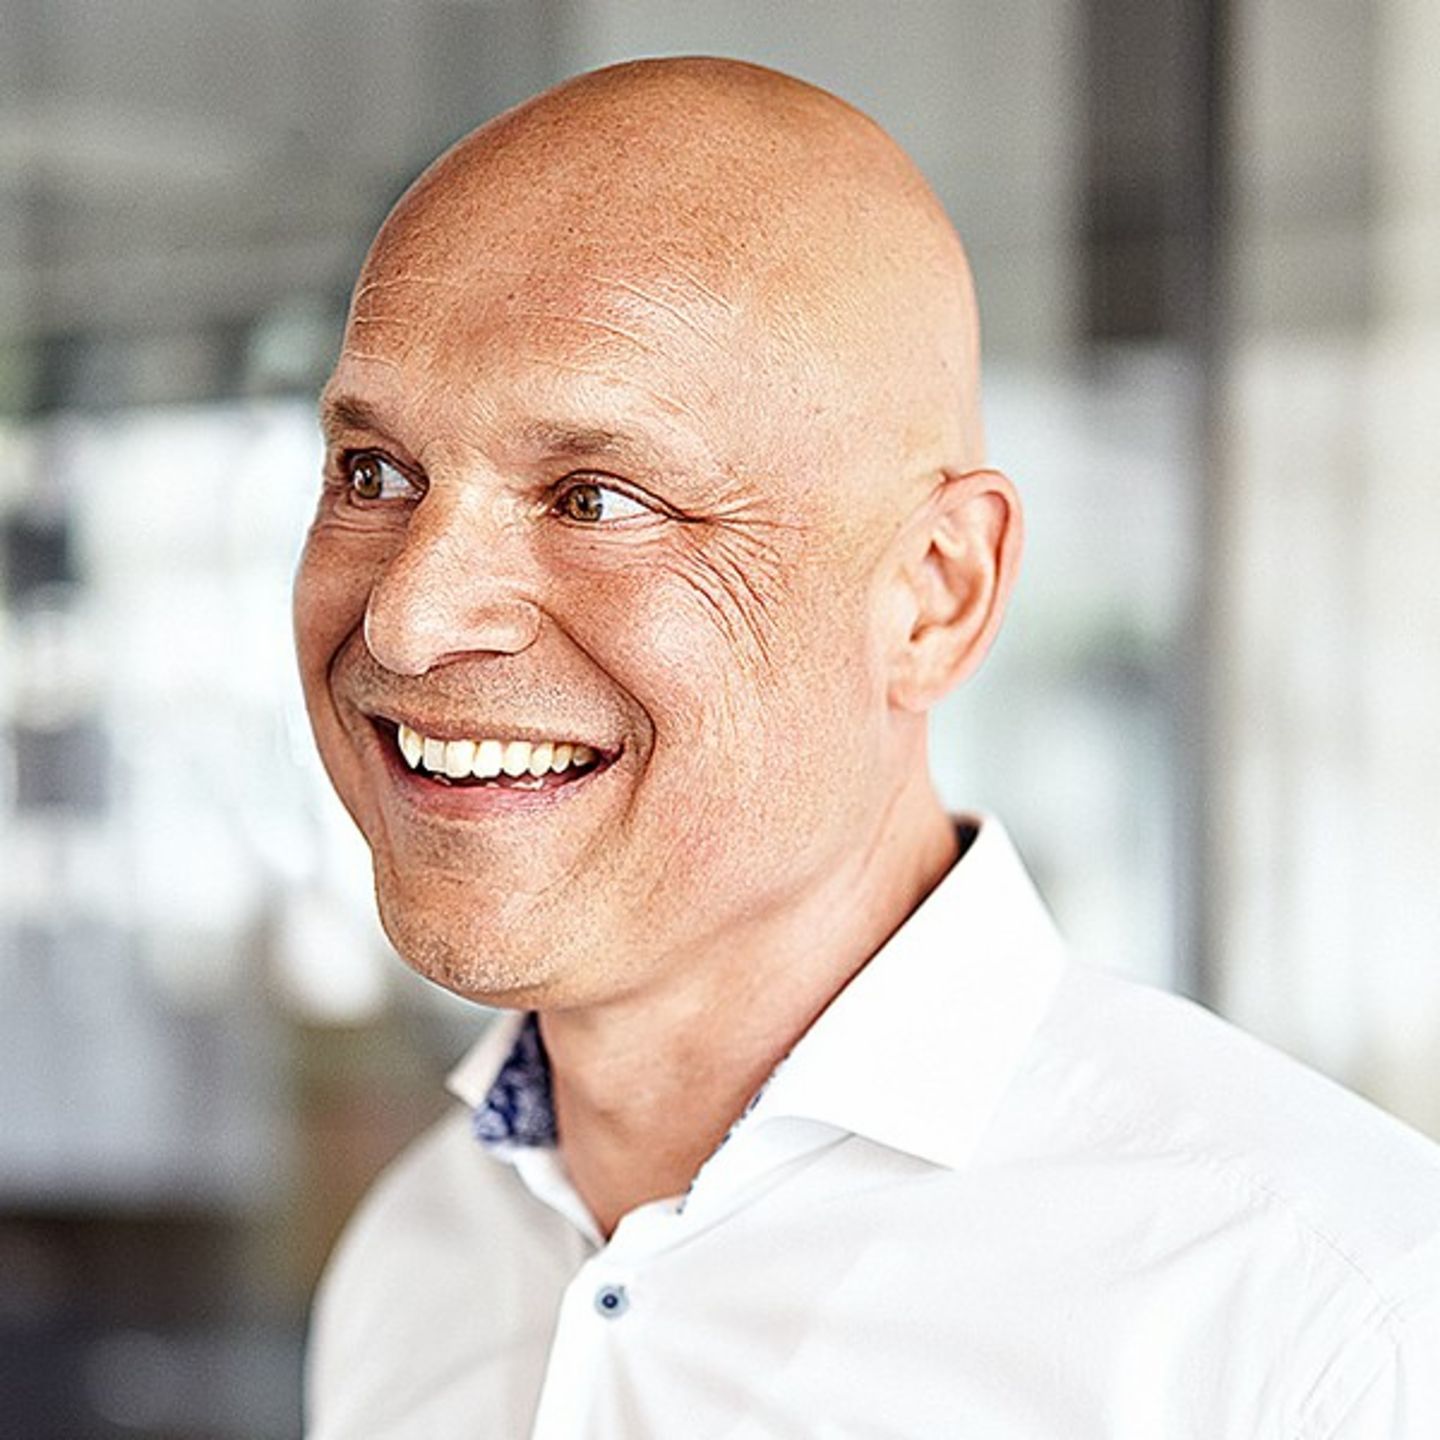 Ein Porträtfoto zeigt Andreas Behmenburg, Head of Sales bei EOS Deutschland